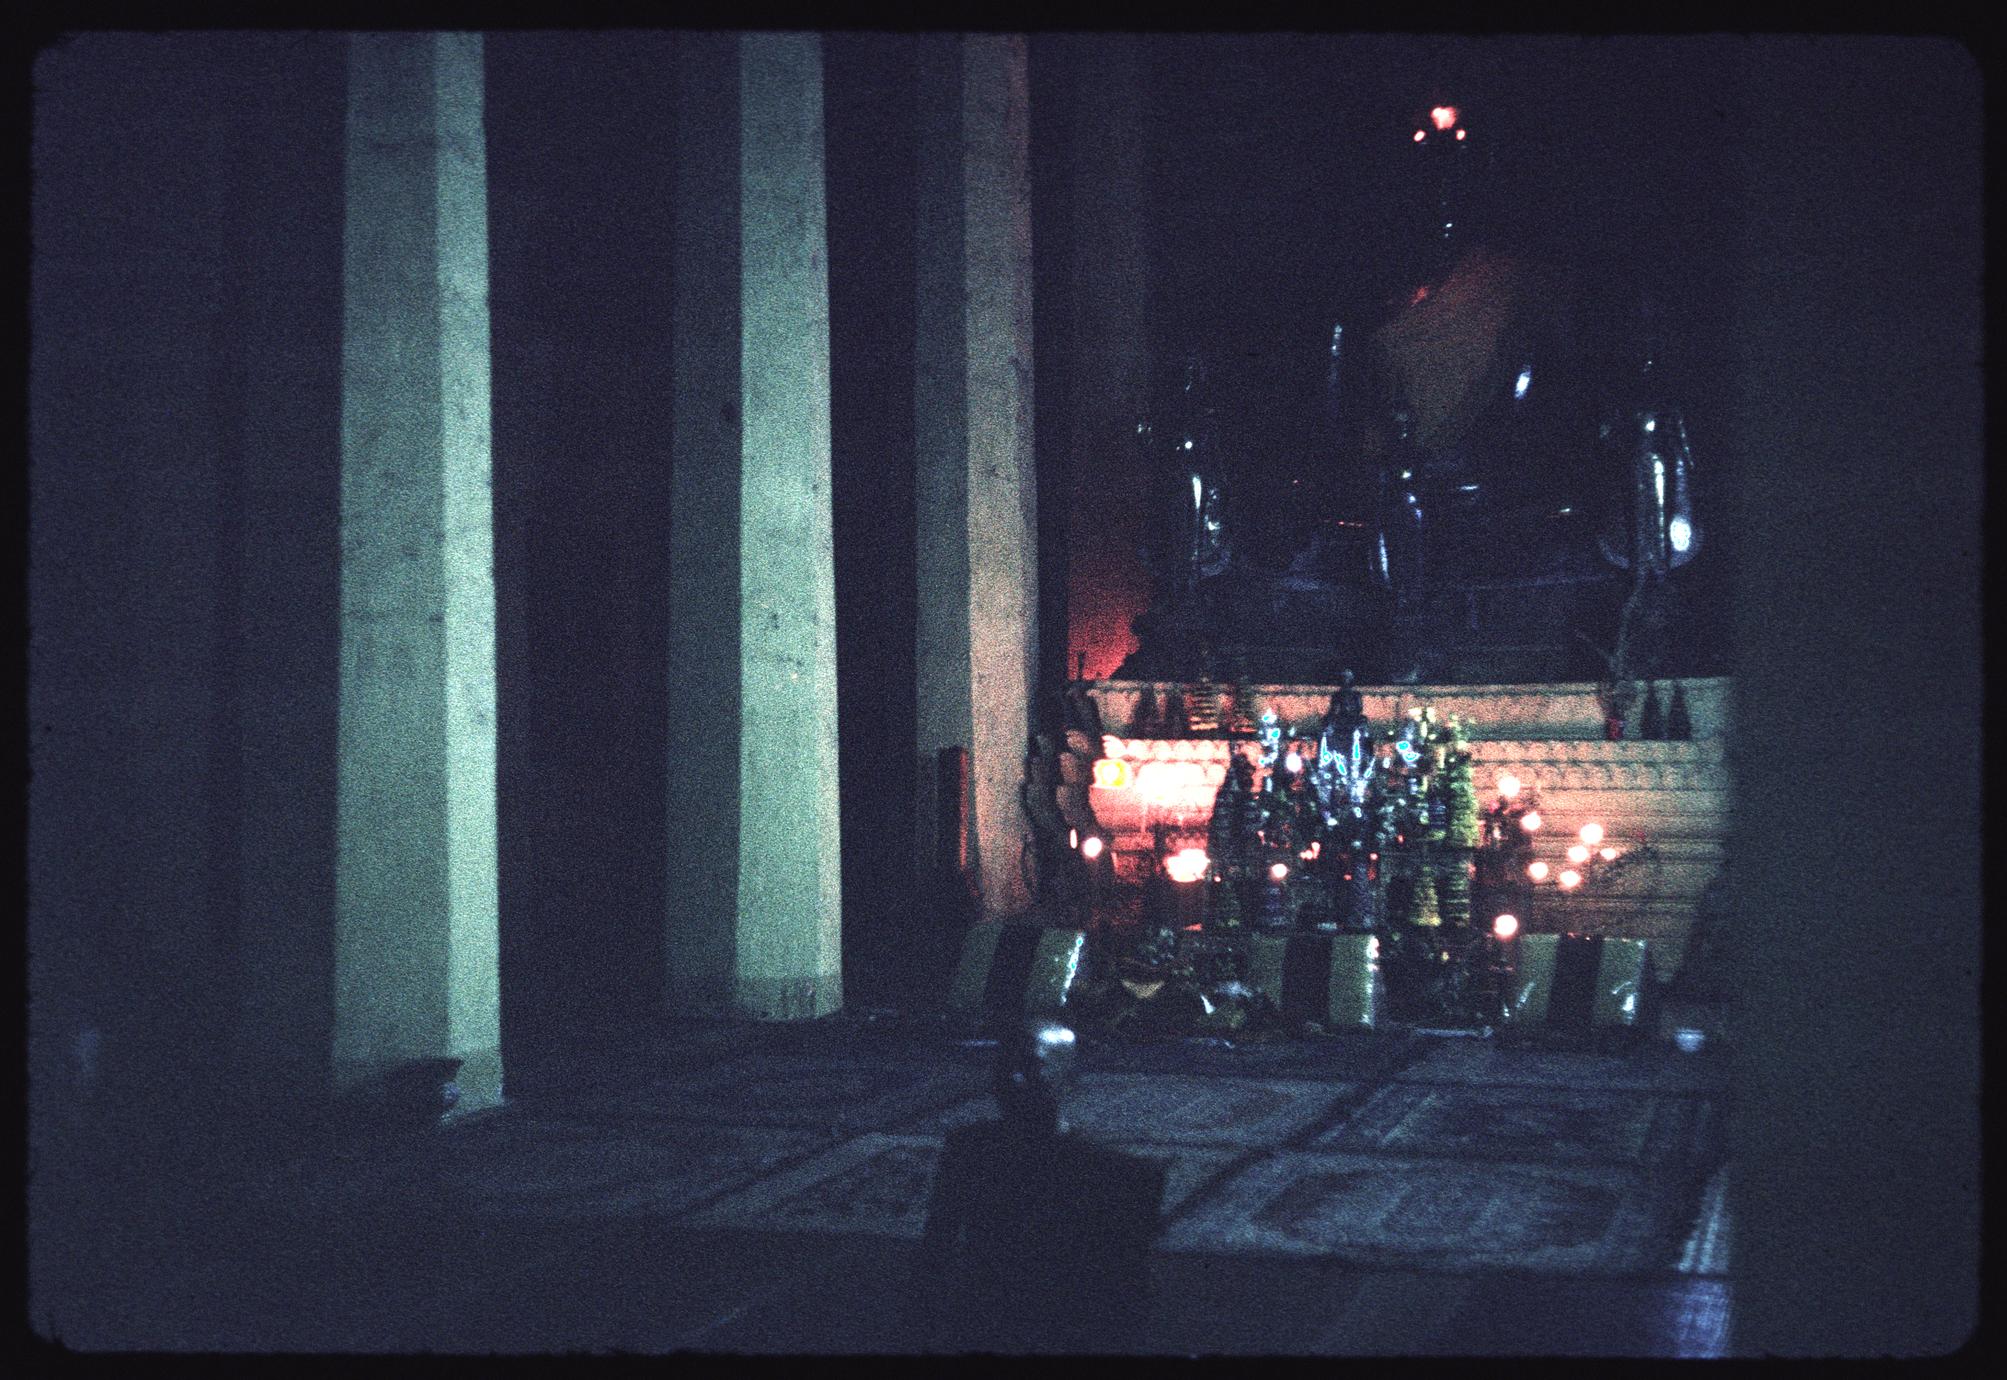 Altar near temple